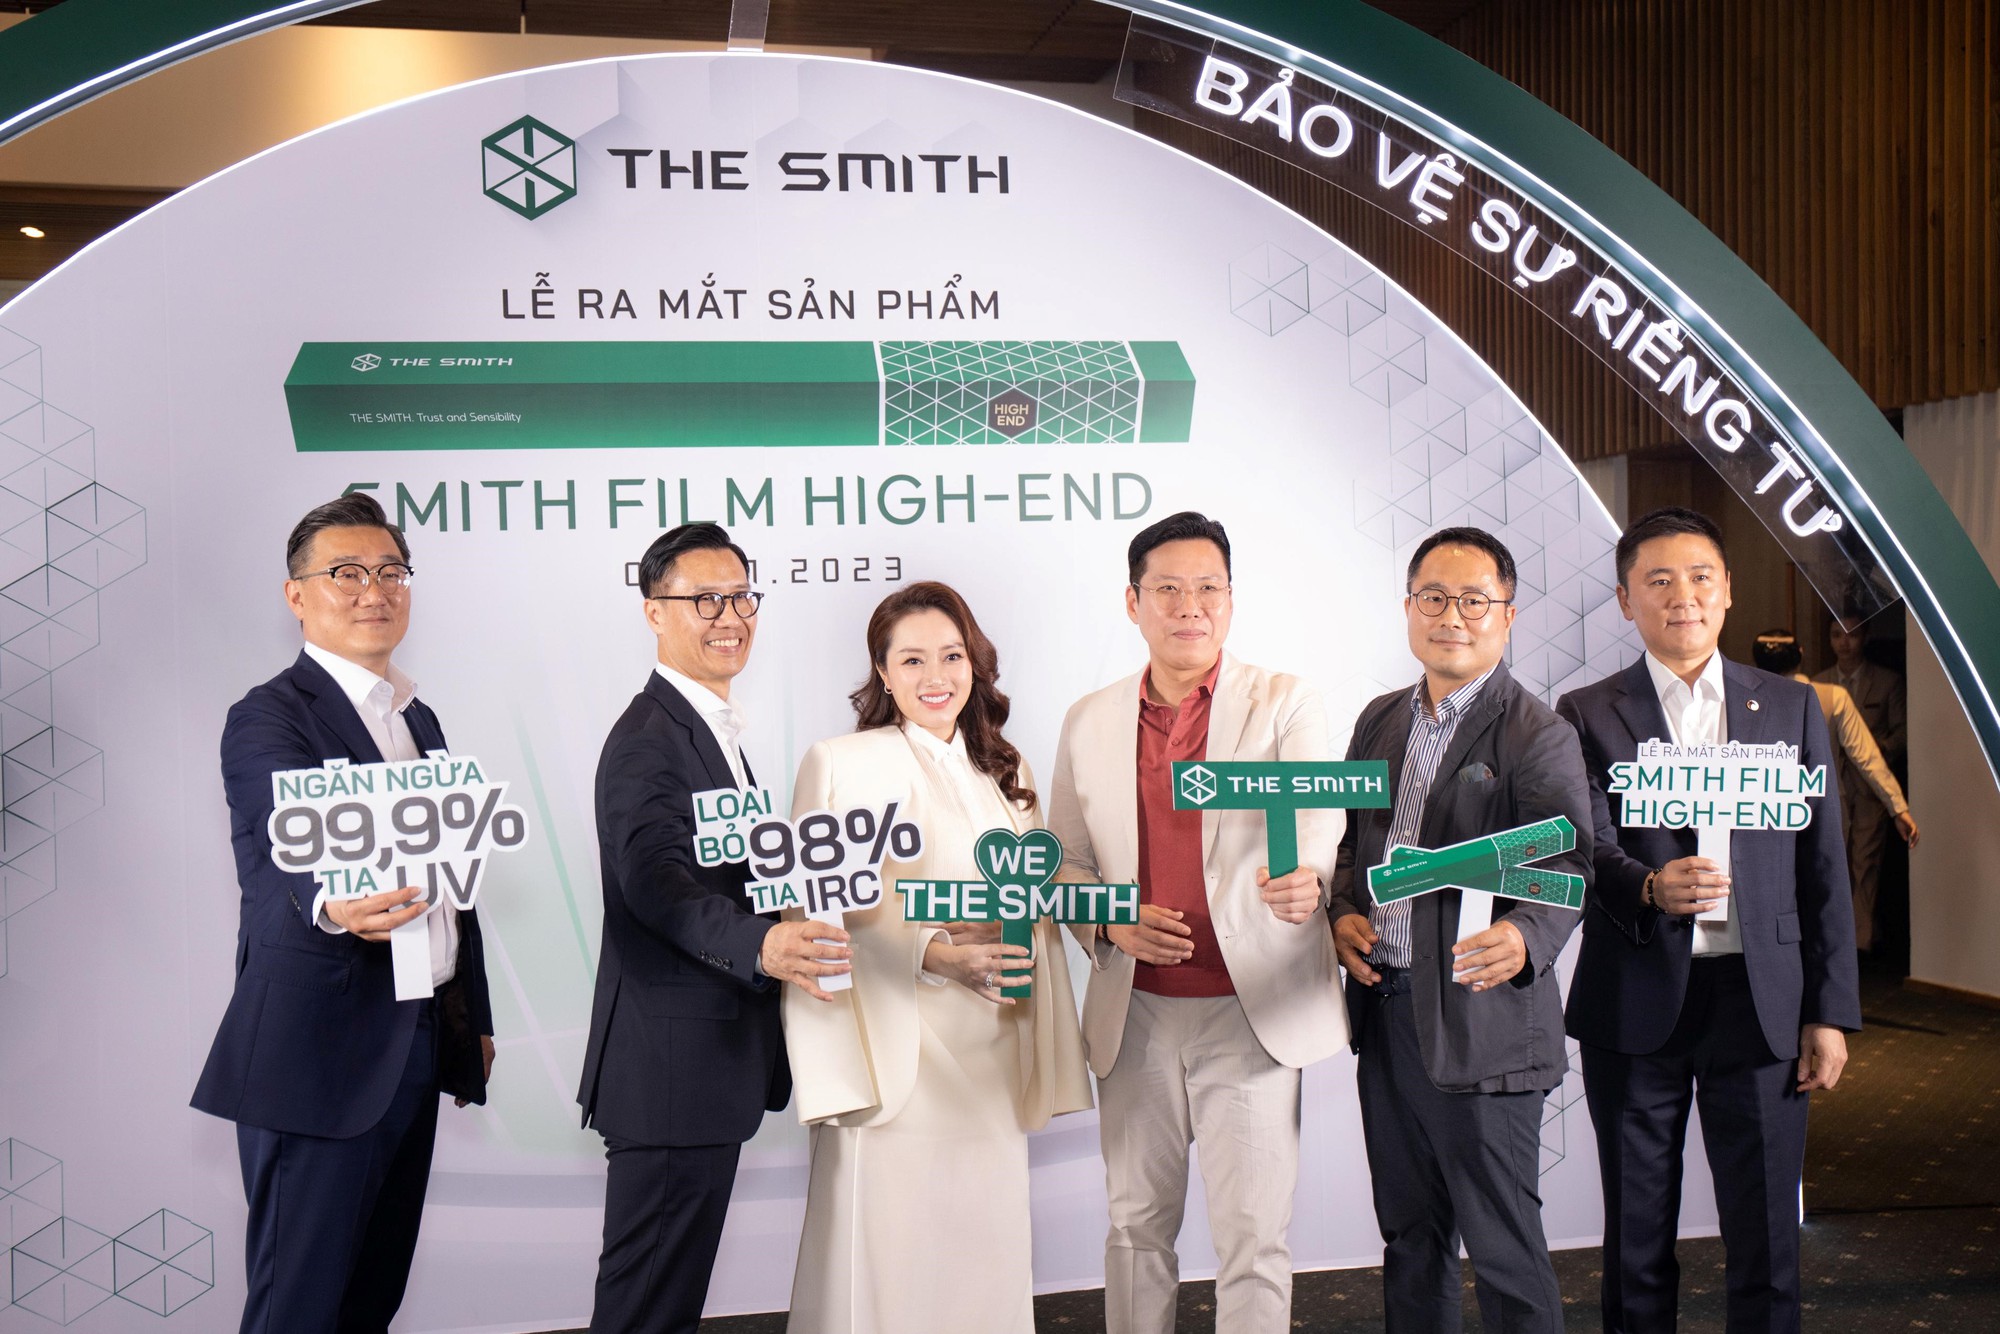 Ra mắt HIGH END - Phim cách nhiệt cao cấp được cải tiến theo phản hồi của khách Việt, ứng dụng nhiều công nghệ chống UV, cách nhiệt hiện đại - Ảnh 3.